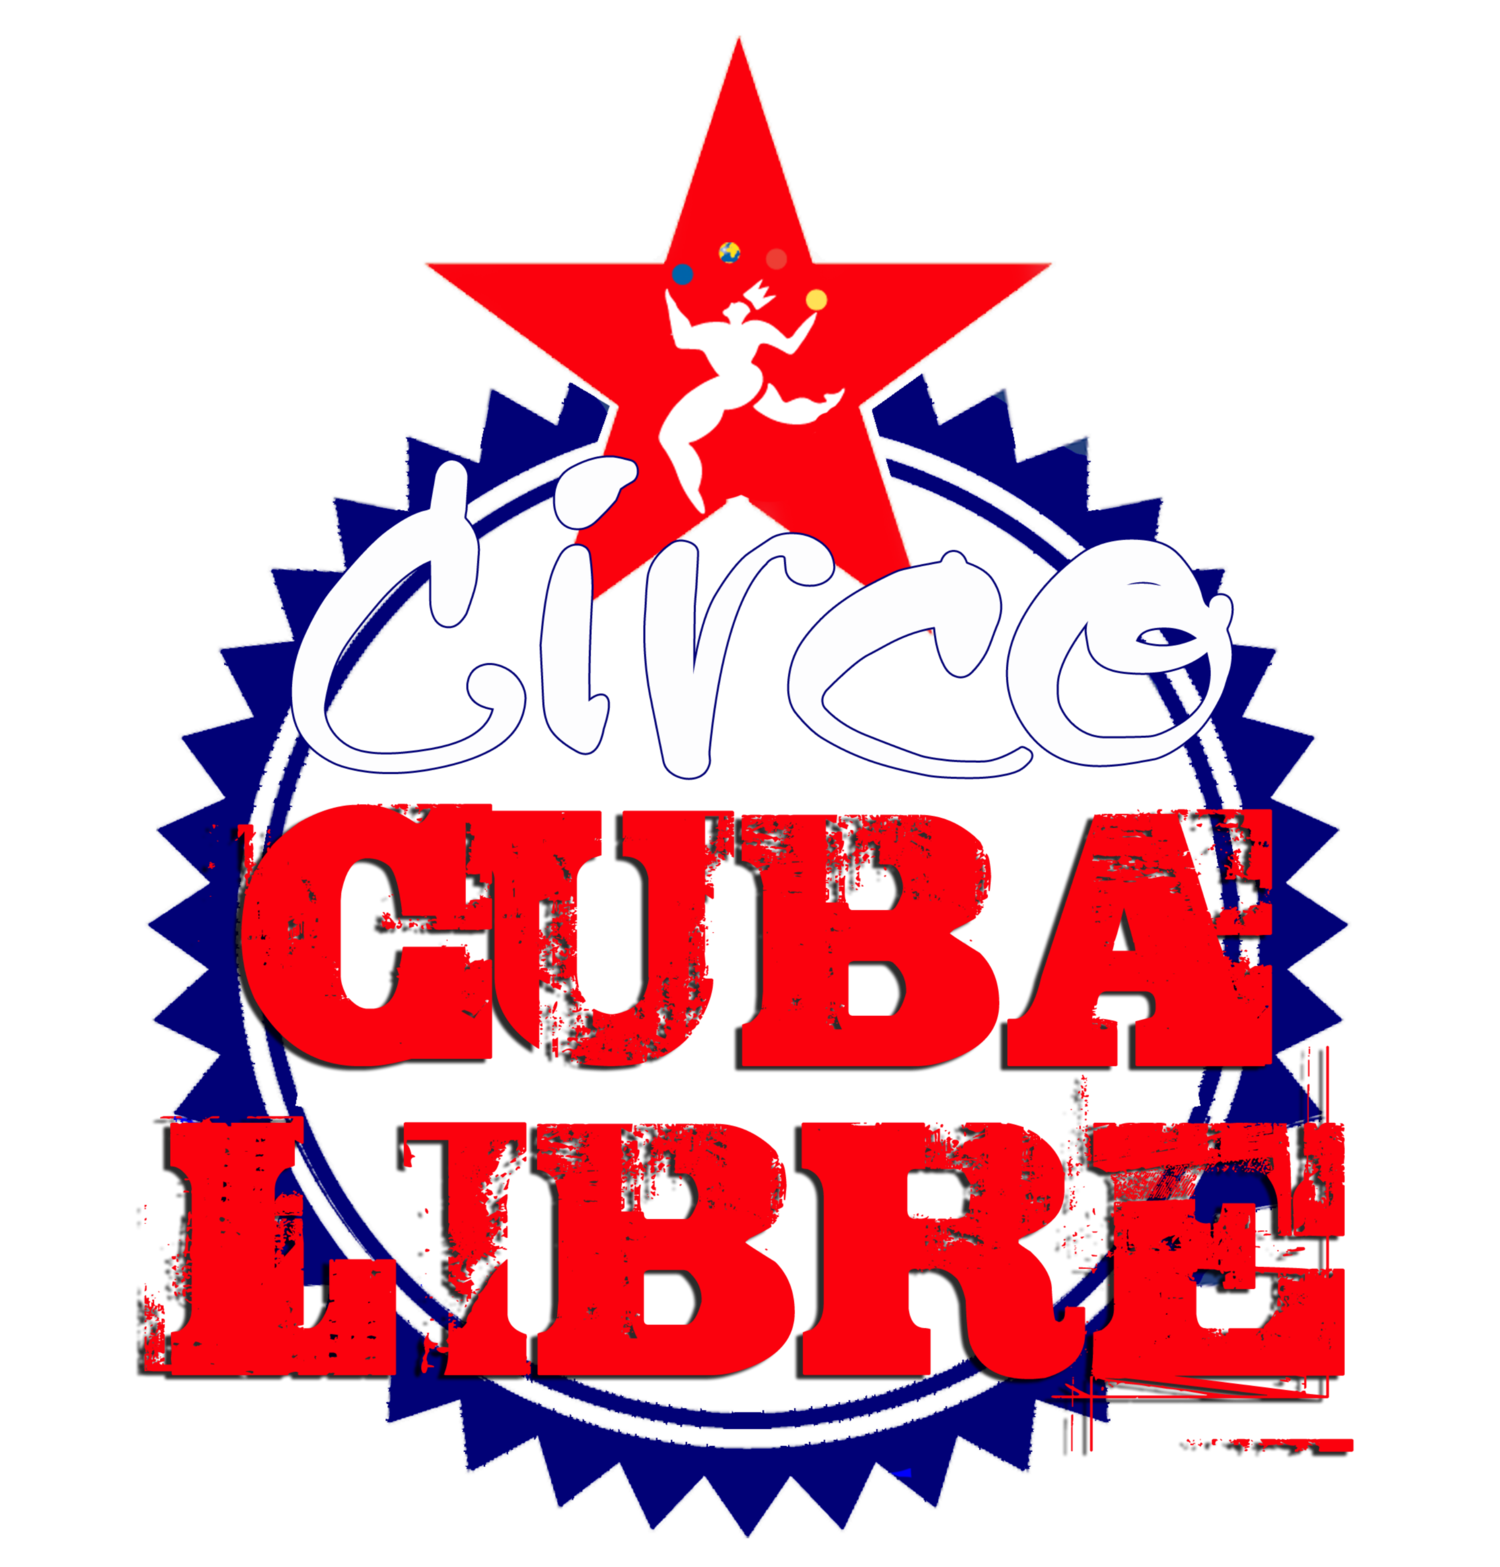 Circo Cuba Libre